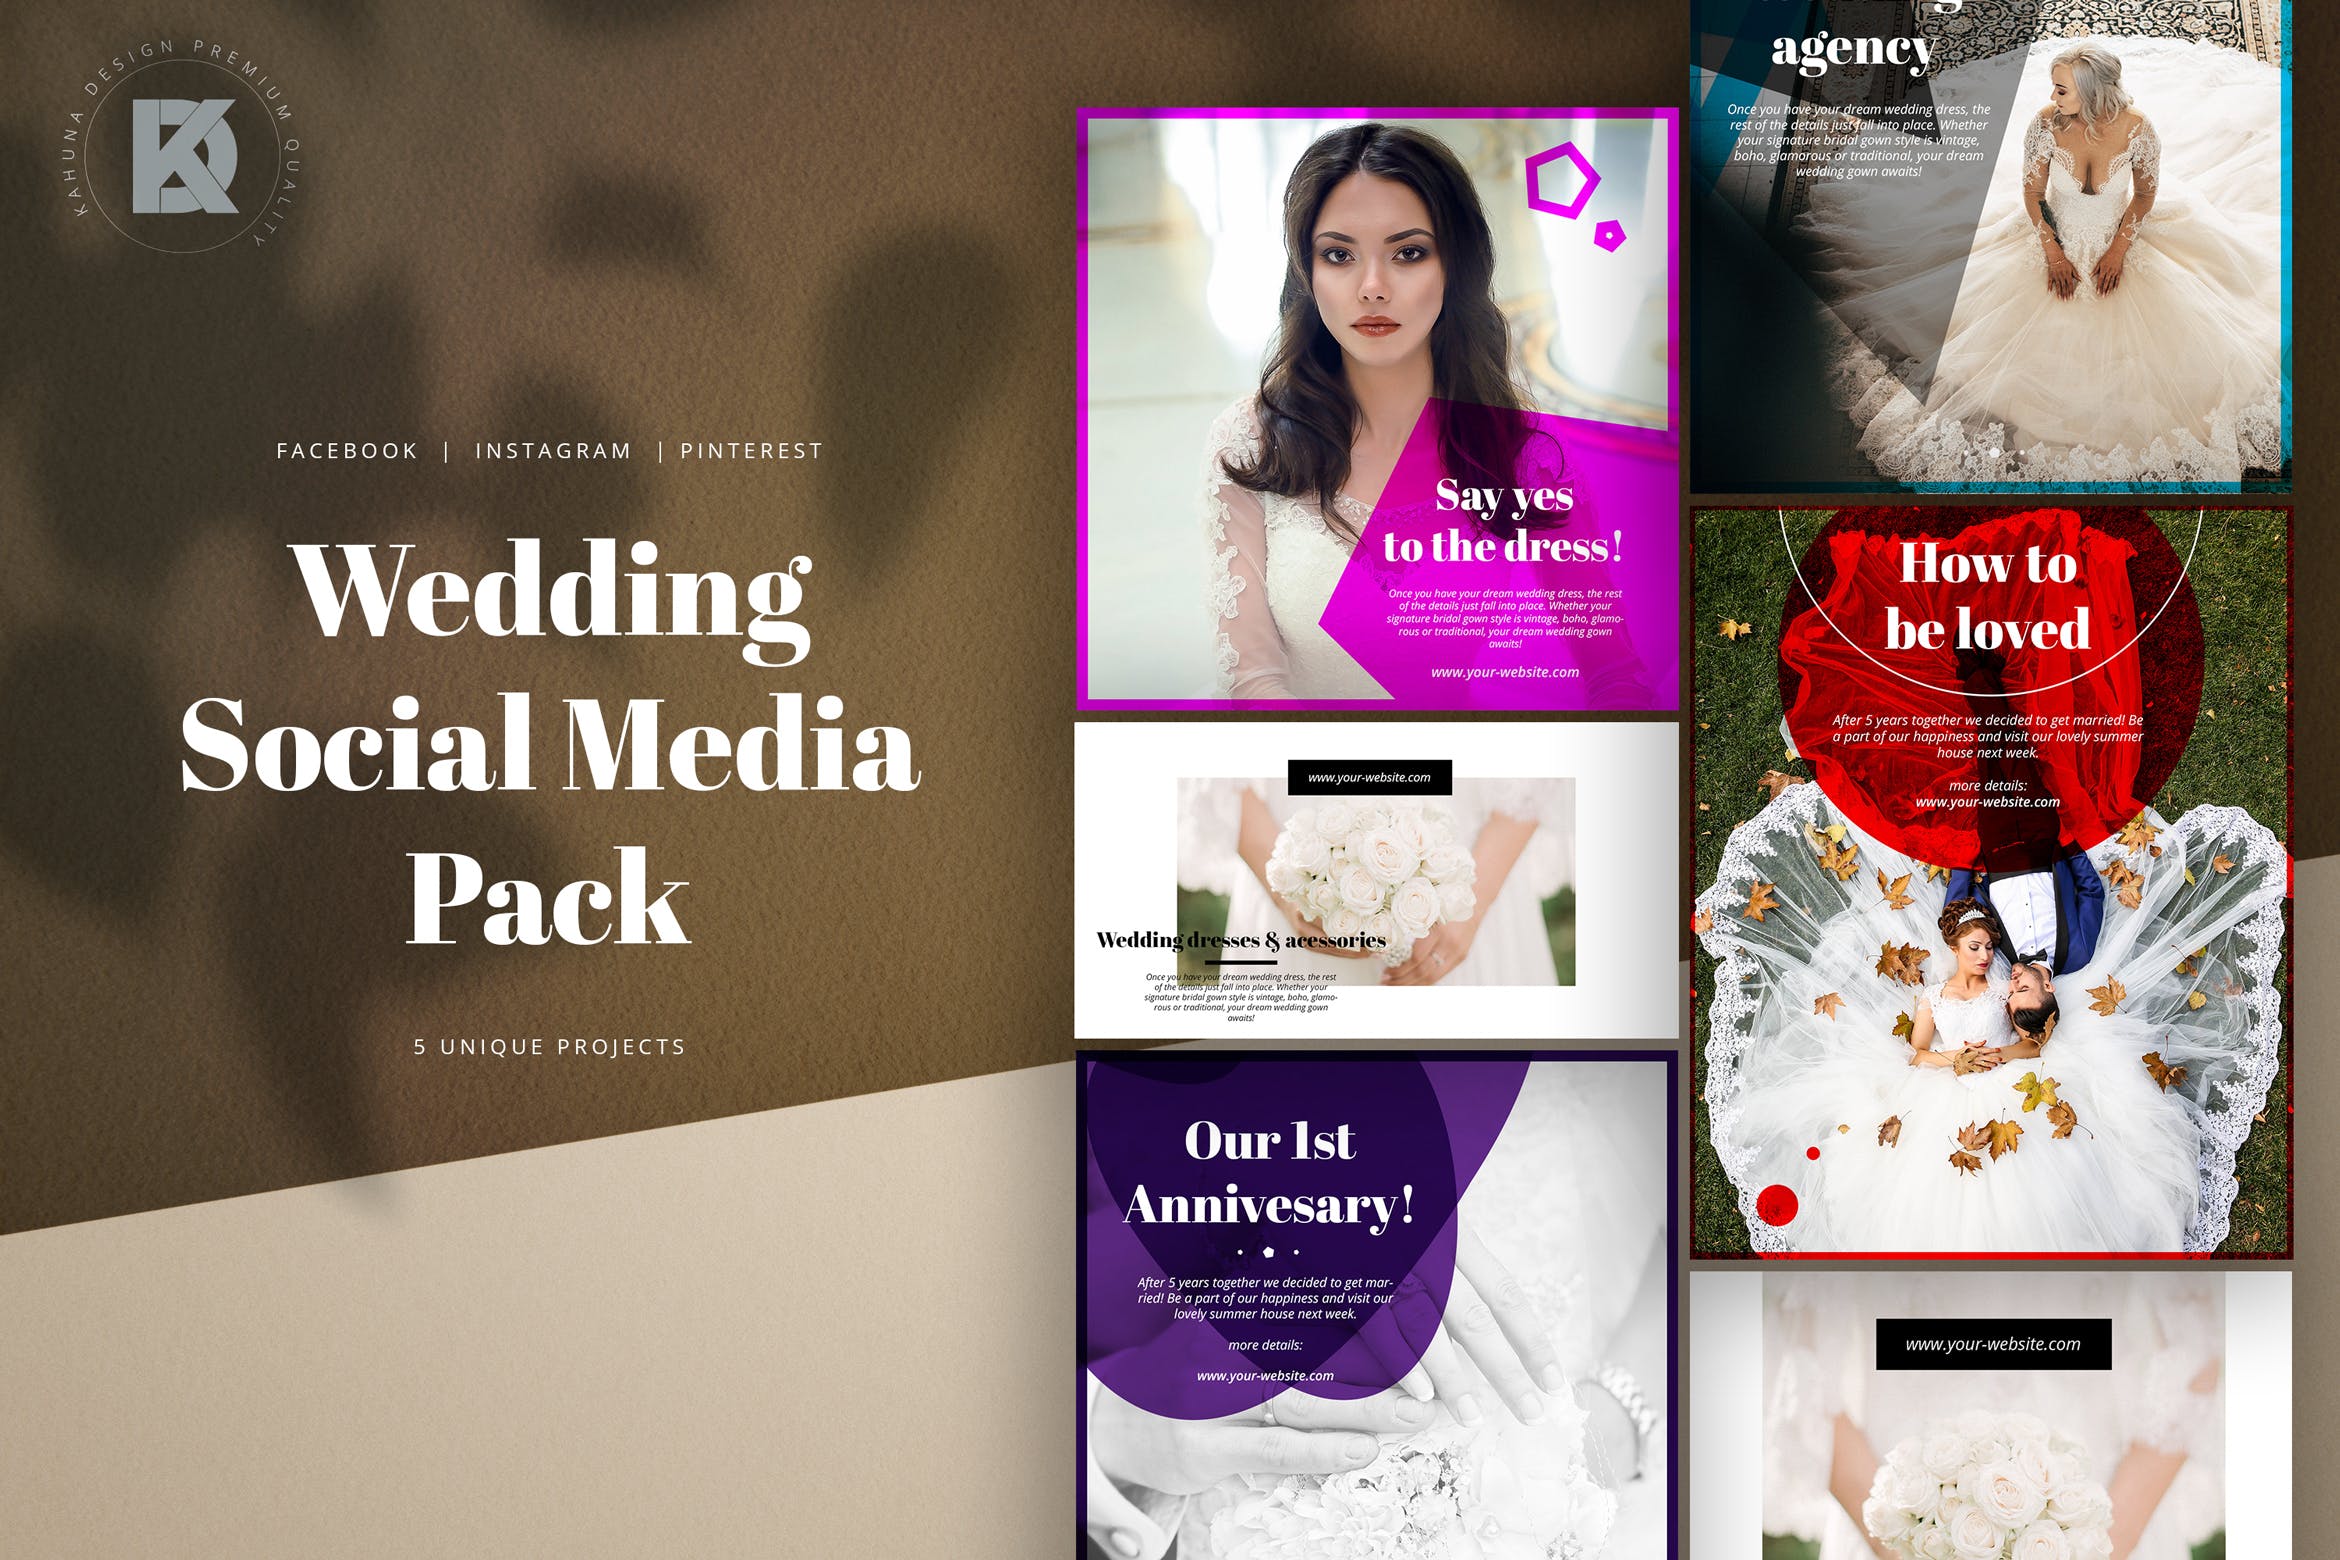 婚礼婚宴邀请社交媒体设计模板素材库精选 Wedding Social Media Kit插图